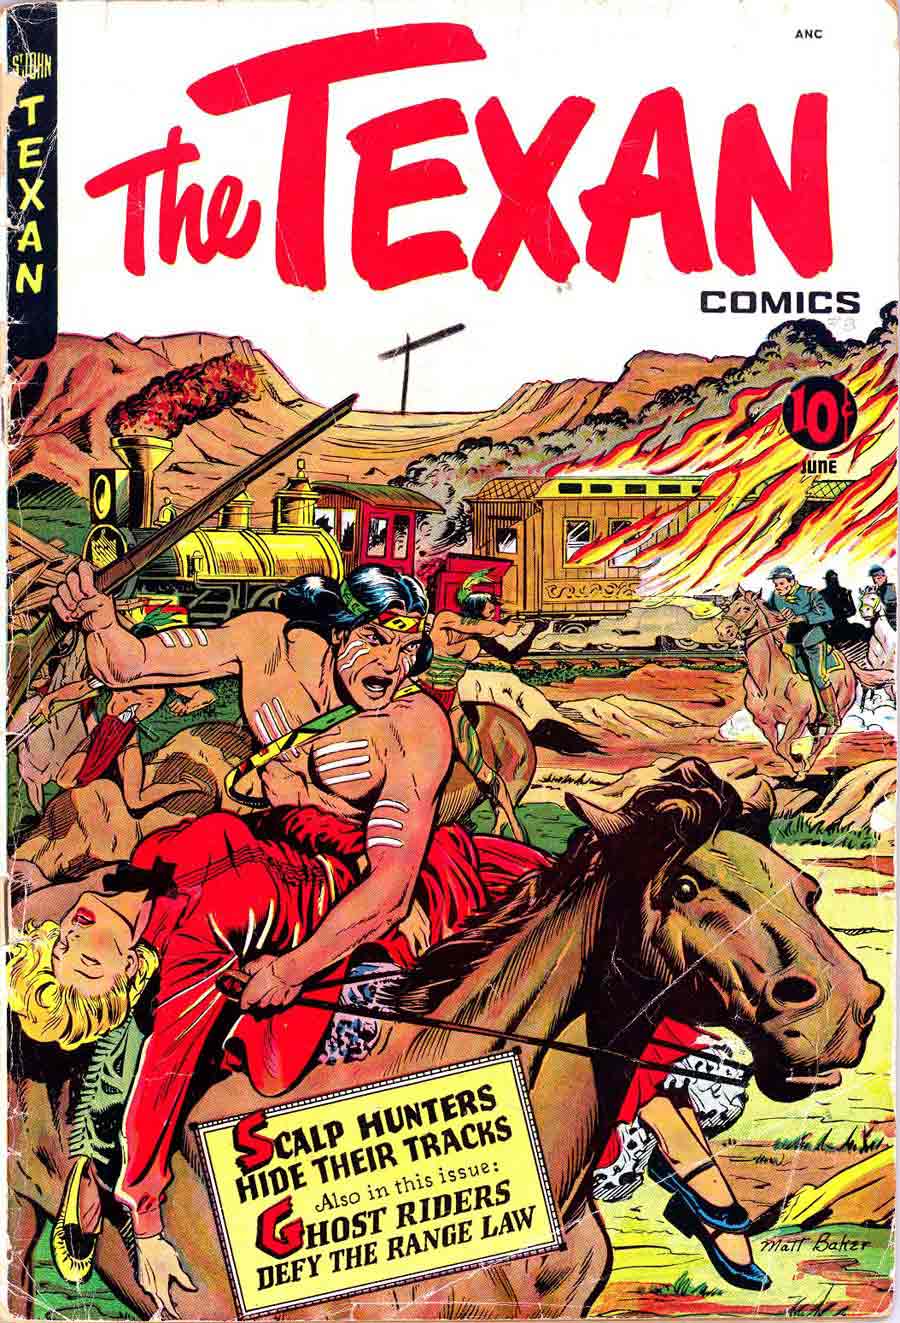 Matt Baker golden age 1950s st. john western comic book cover art - Texan #8